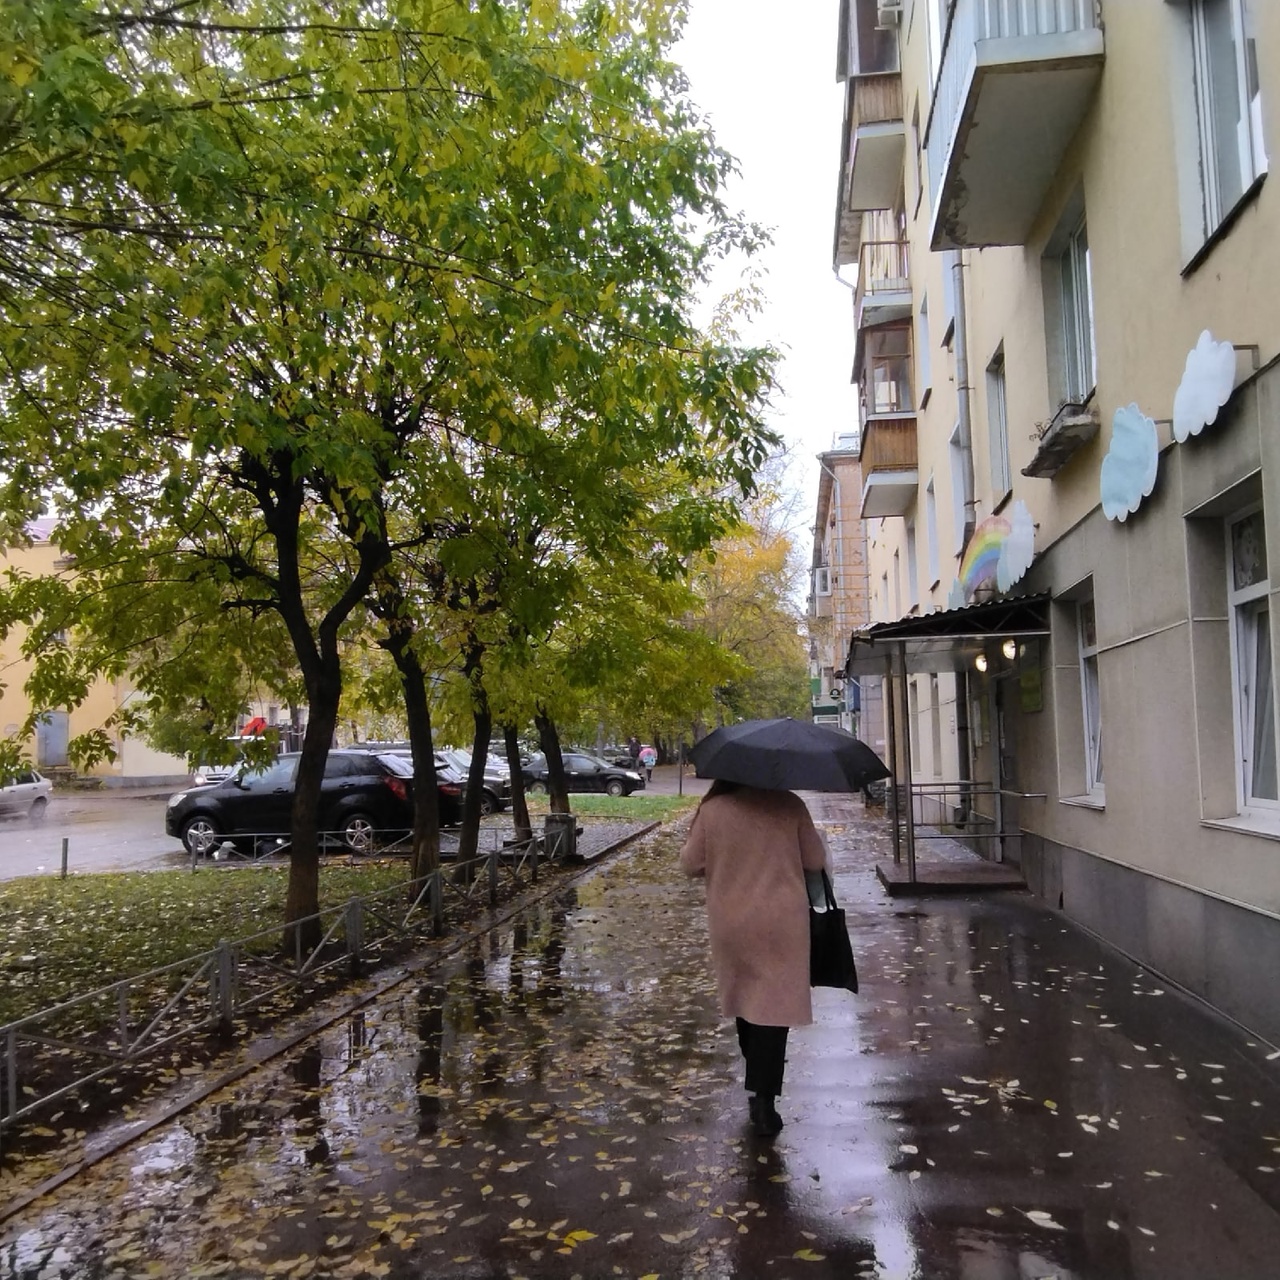 В Кирове вторник выдастся пасмурным и дождливым: прогноз погоды на 25 октября